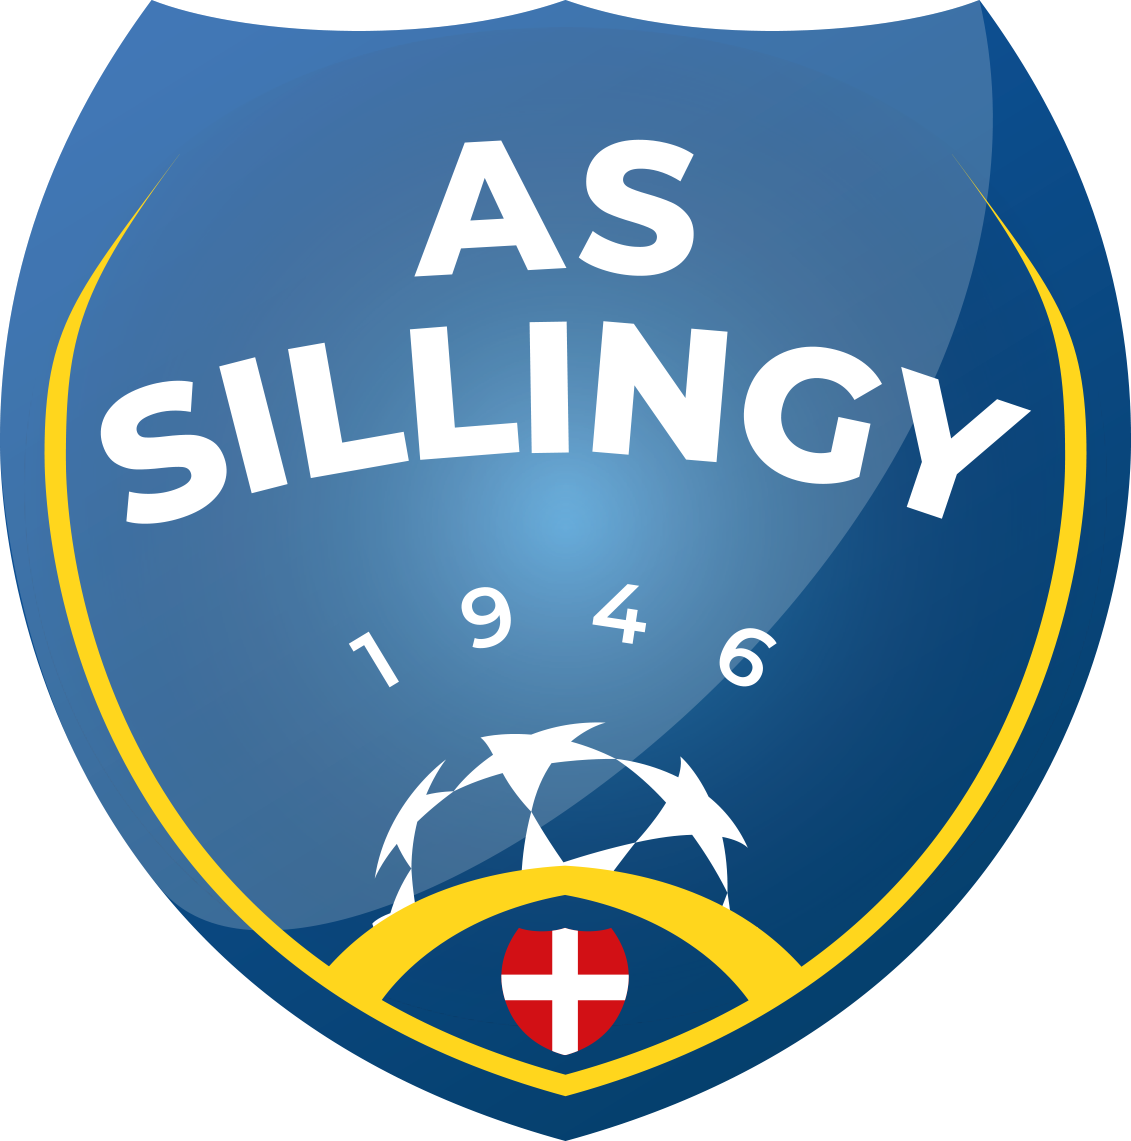 Boutique de l'AS Sillingy | TeamSport2000
			